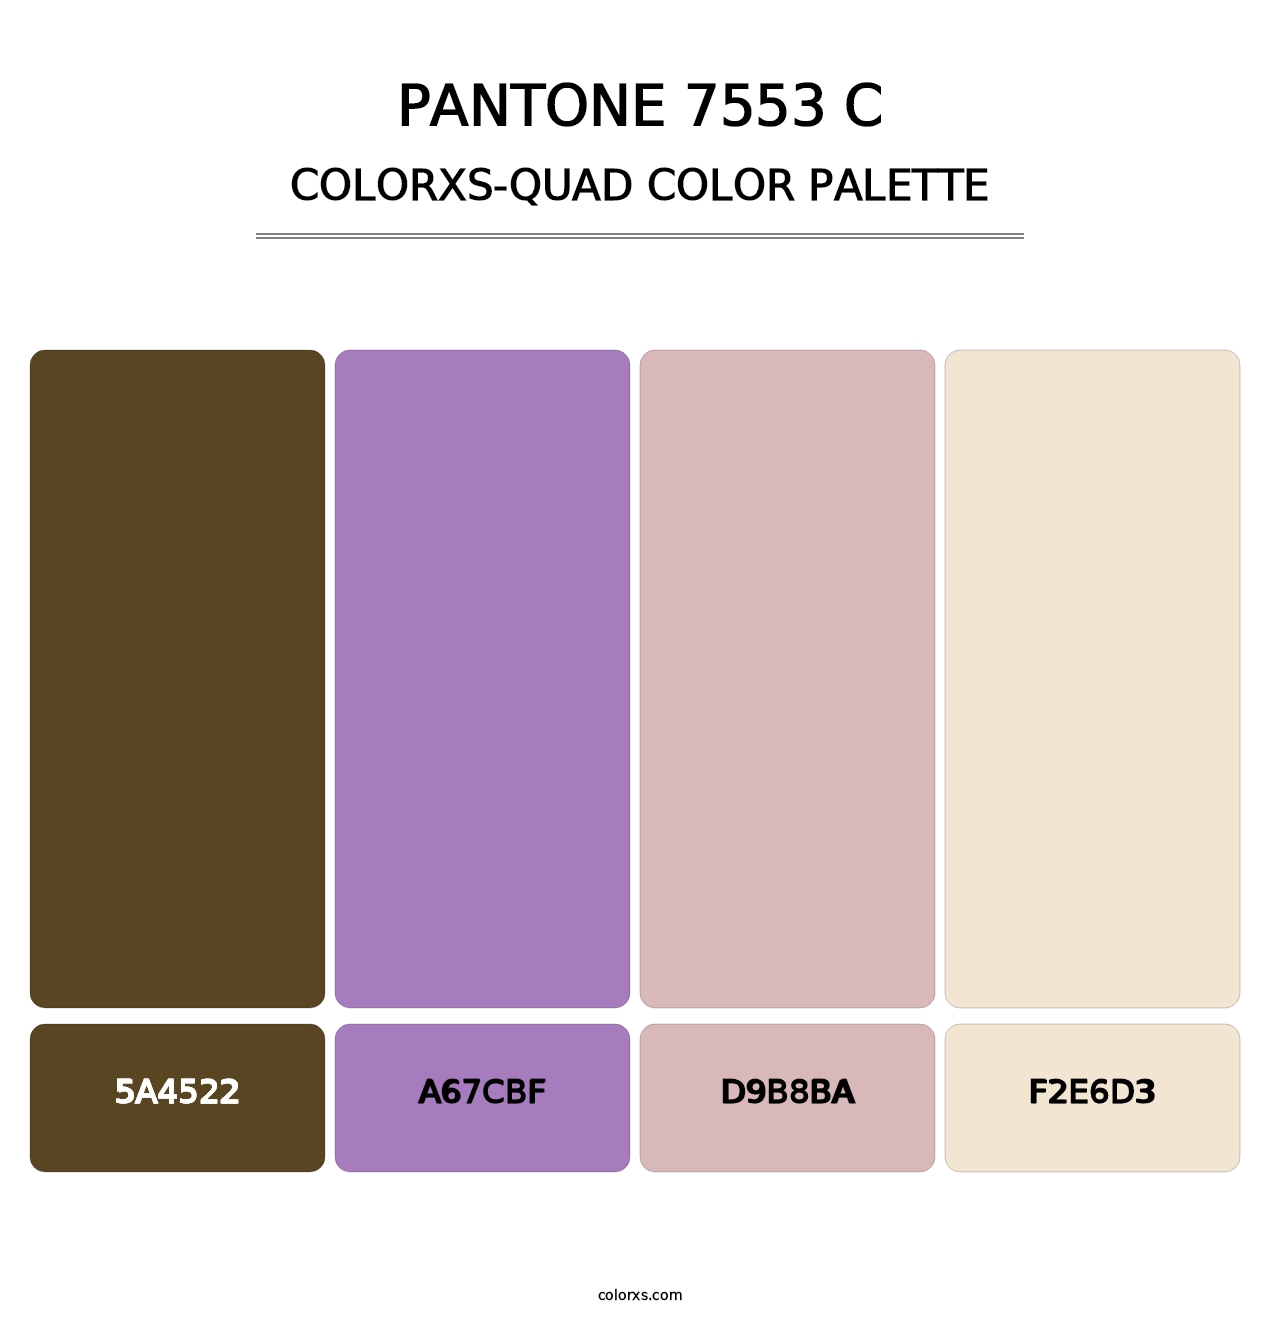 PANTONE 7553 C - Colorxs Quad Palette